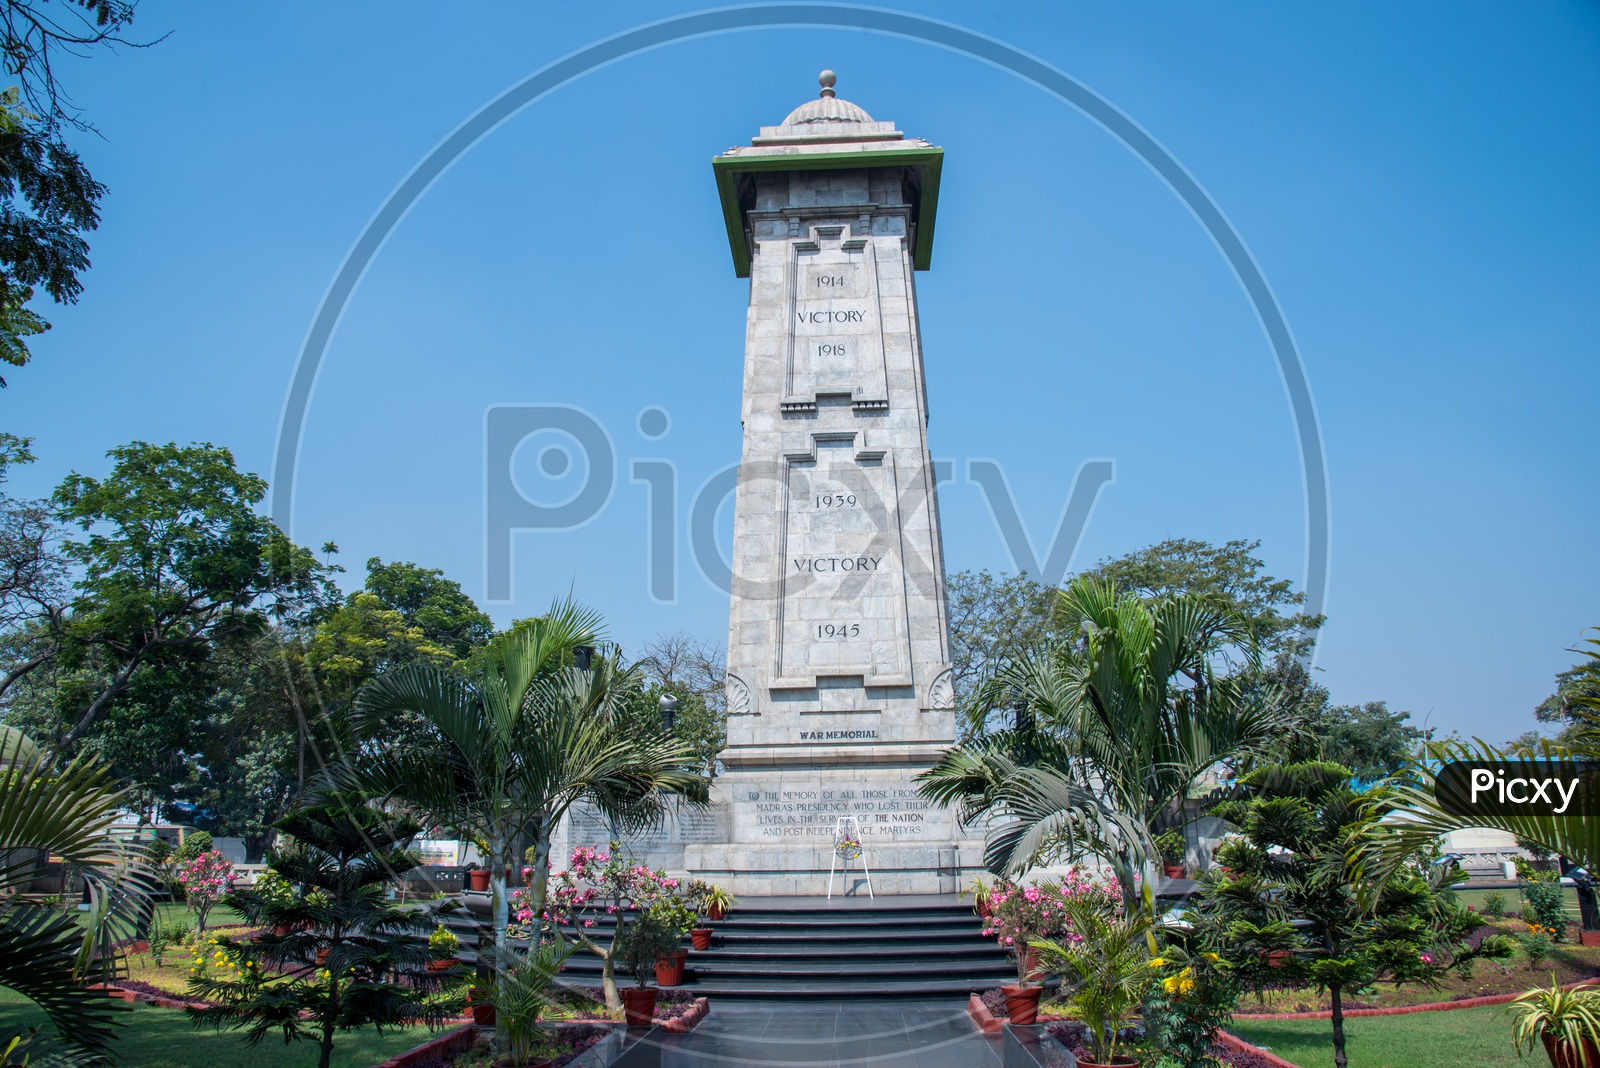 Victoria War Memorial,Chennai.